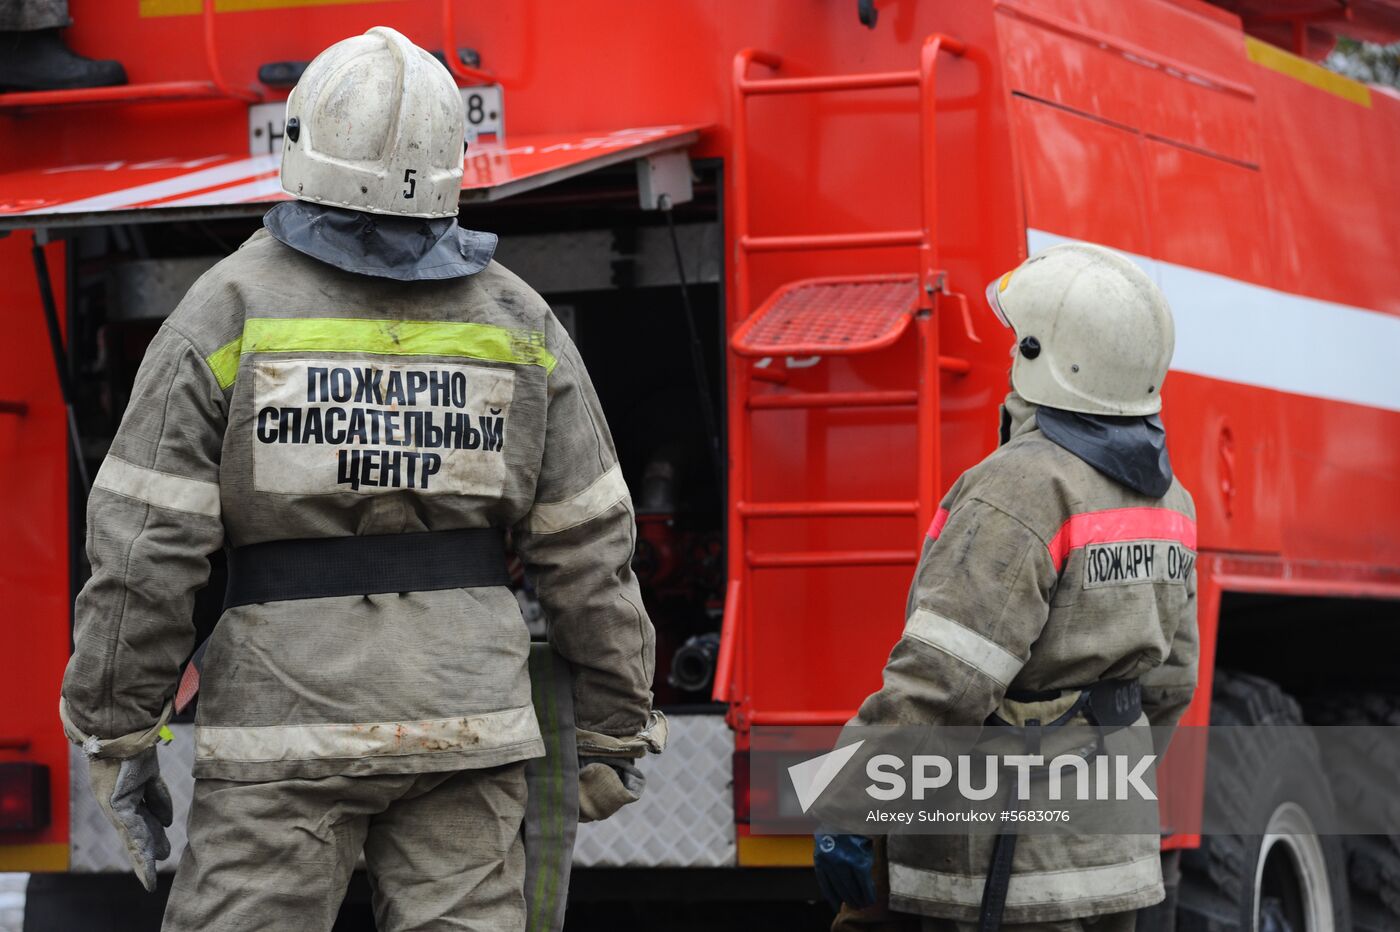 Firefighting-rescue center in Tambov